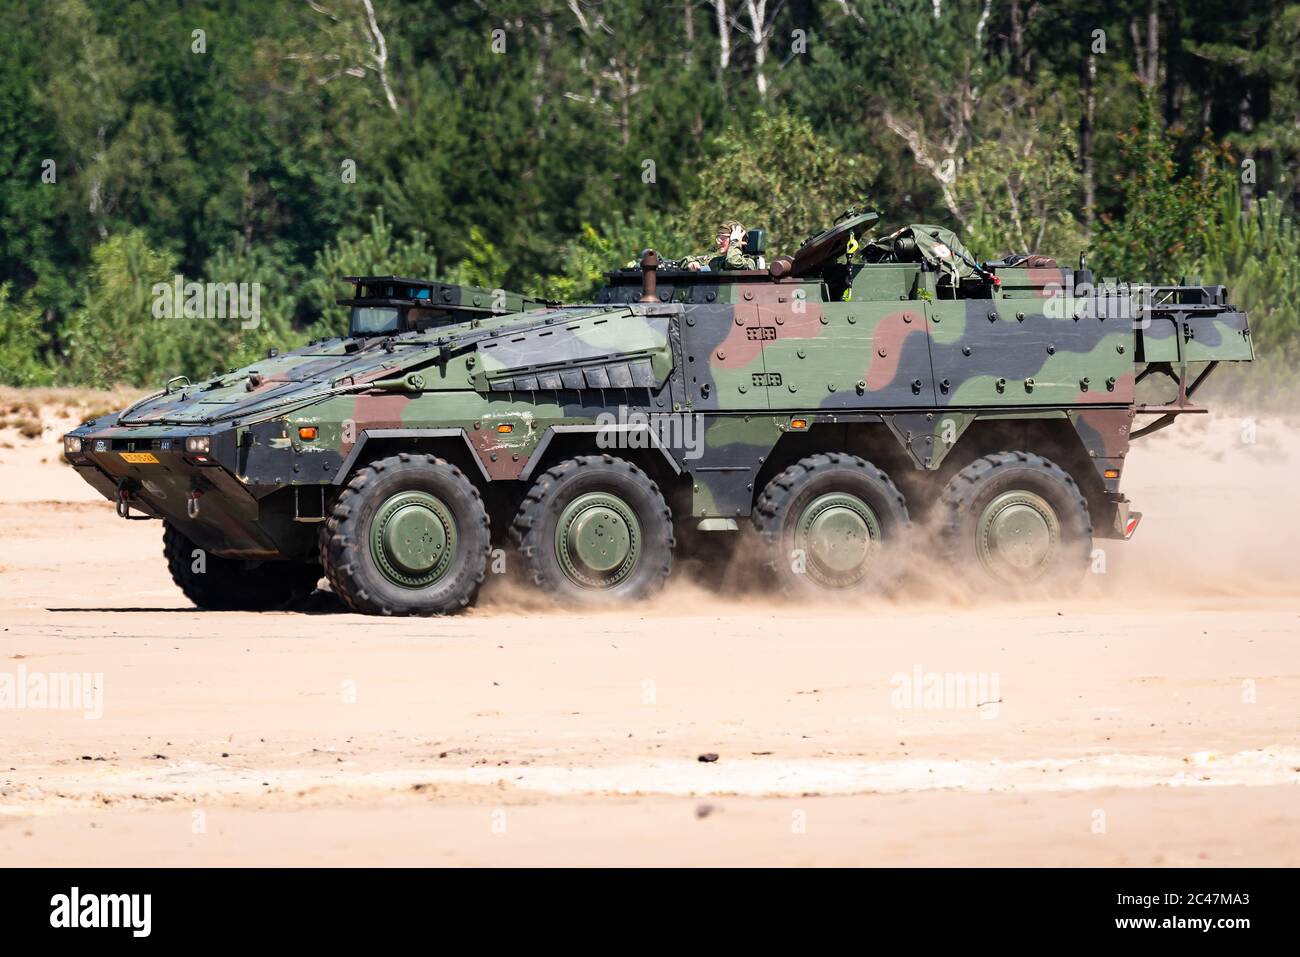 Un Boxer MROV veicolo blindato multirole della Royal Netherlands Army che guida nella sabbia. Foto Stock